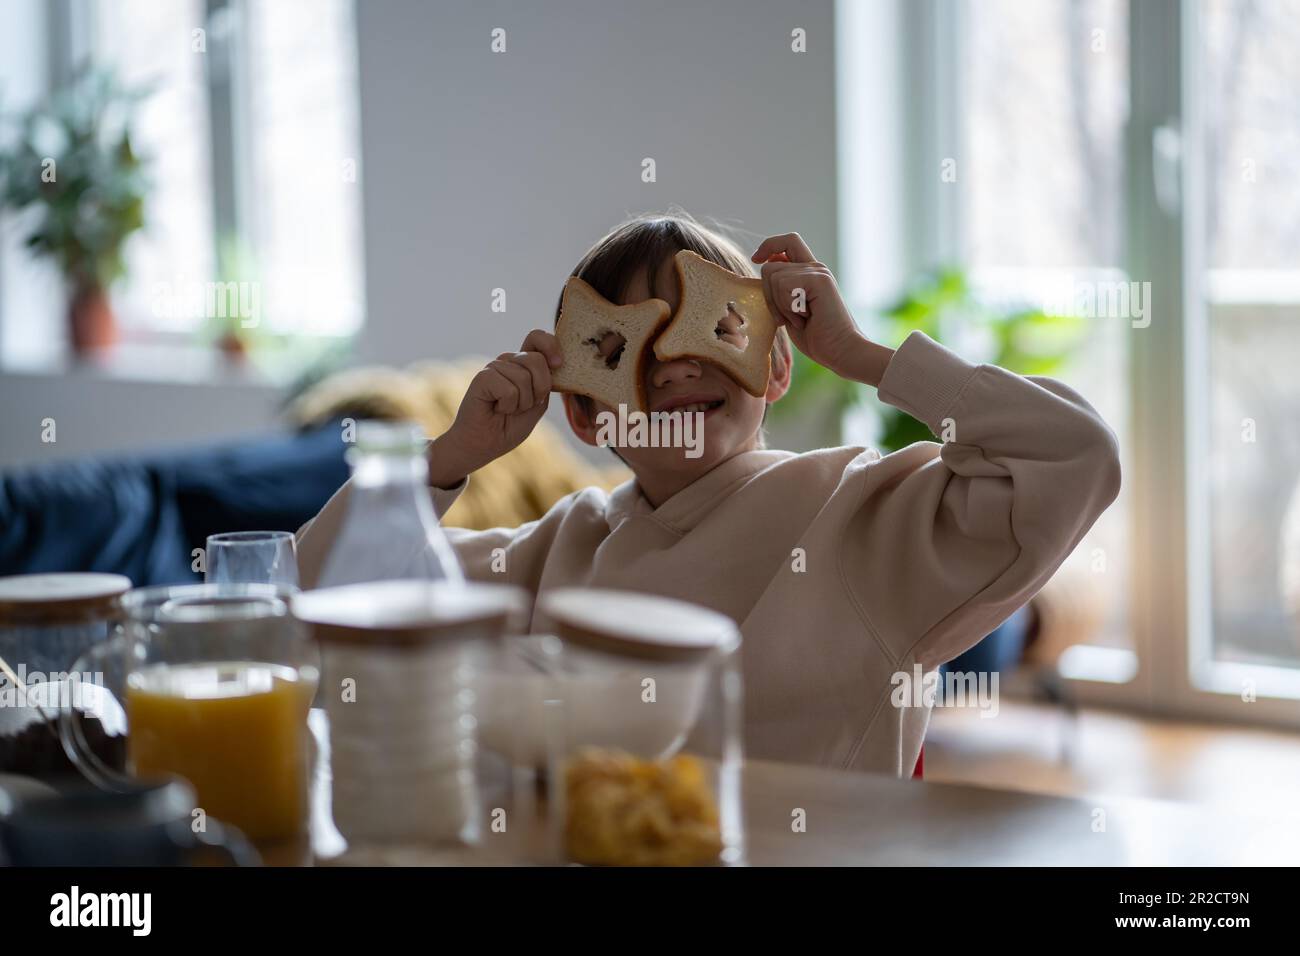 Figlio ragazzo imbrogliando giocando con pezzi di pane che guardano attraverso i fori della macchina fotografica seduto al tavolo. Foto Stock